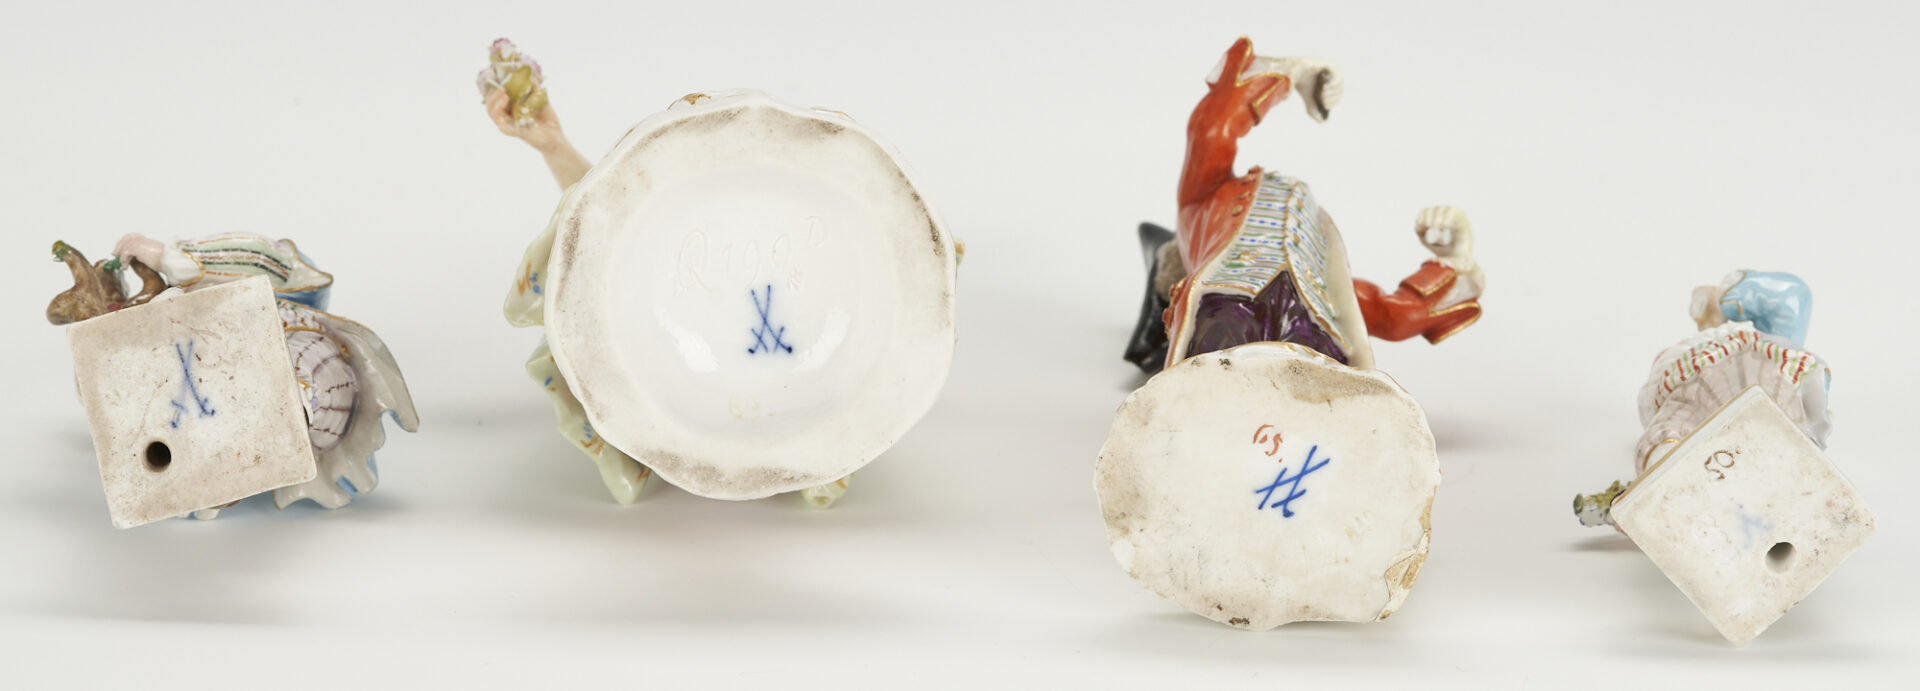 Lot 998: 4 Meissen Porcelain Figures, incl. Crier & Lusatian Woman by Hugo Speiler